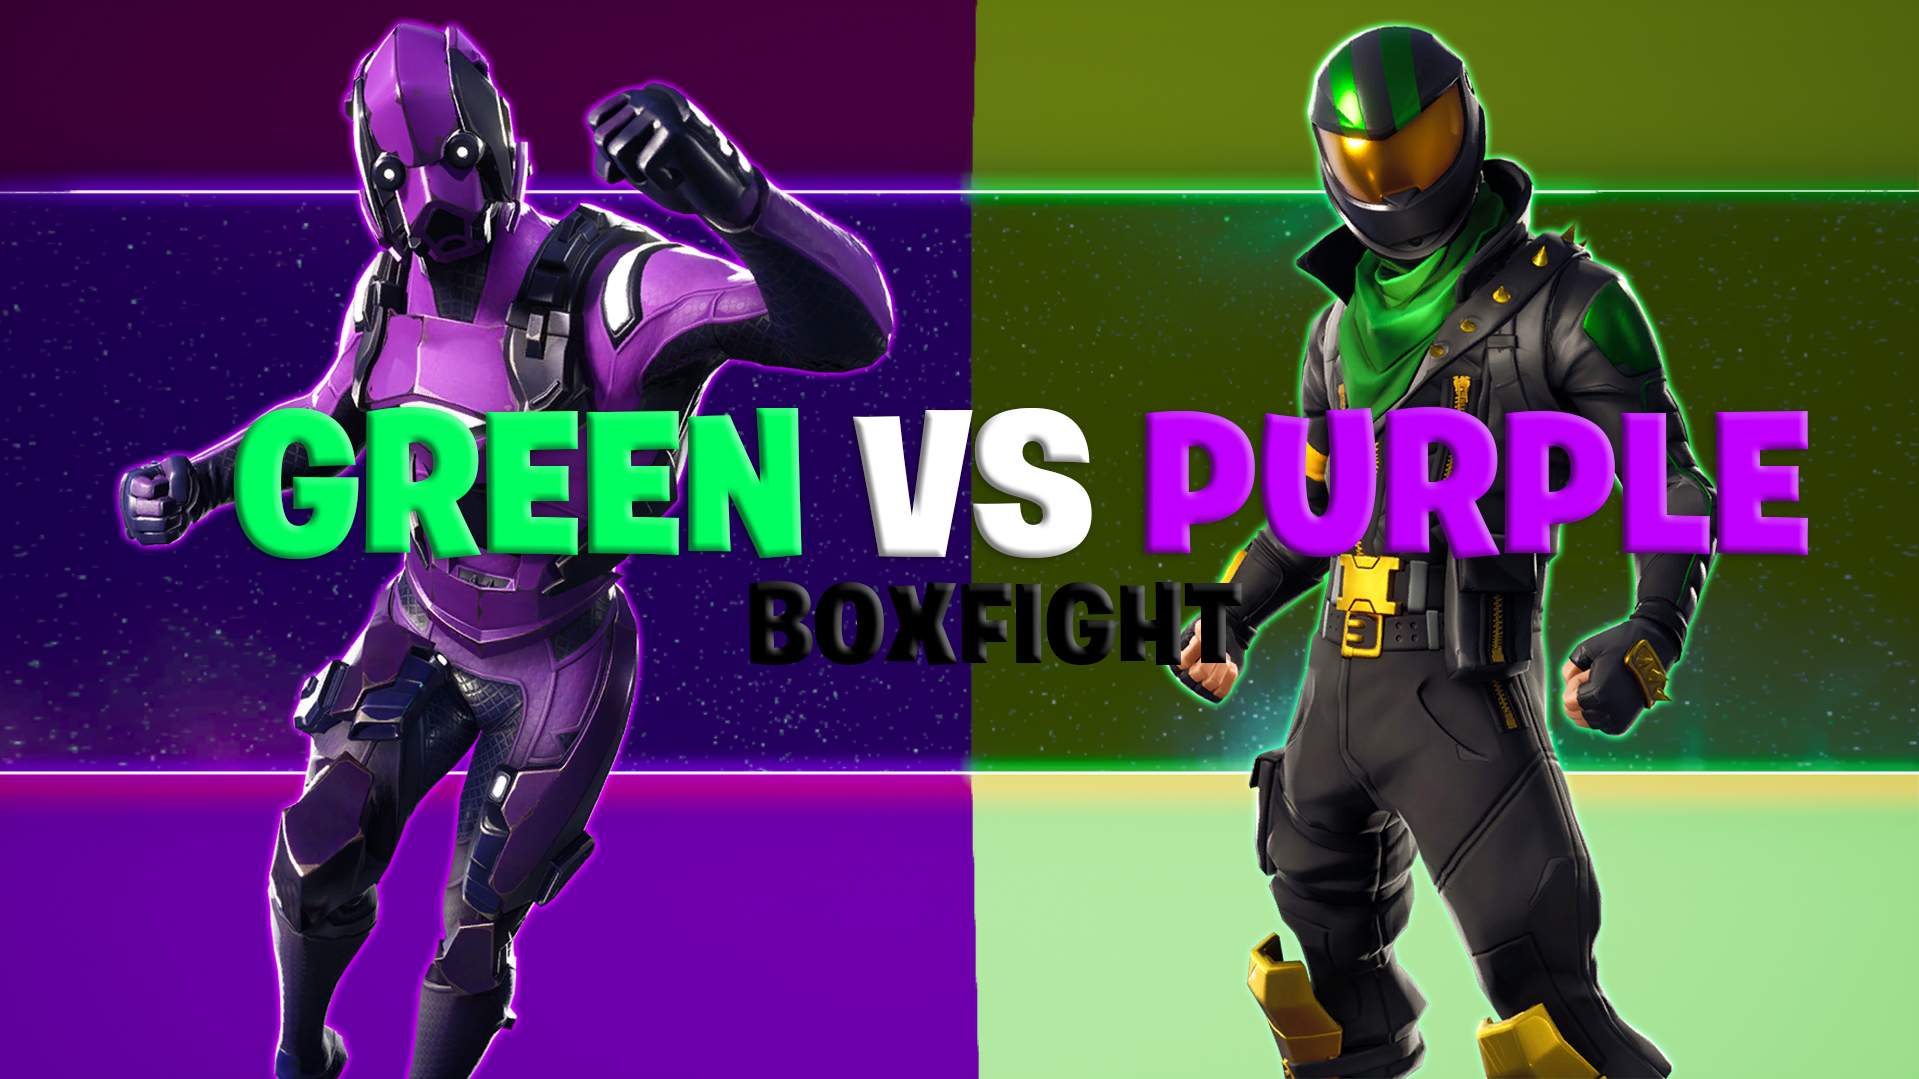 FFA - GREEN VS PURPLE BOXFIGHT